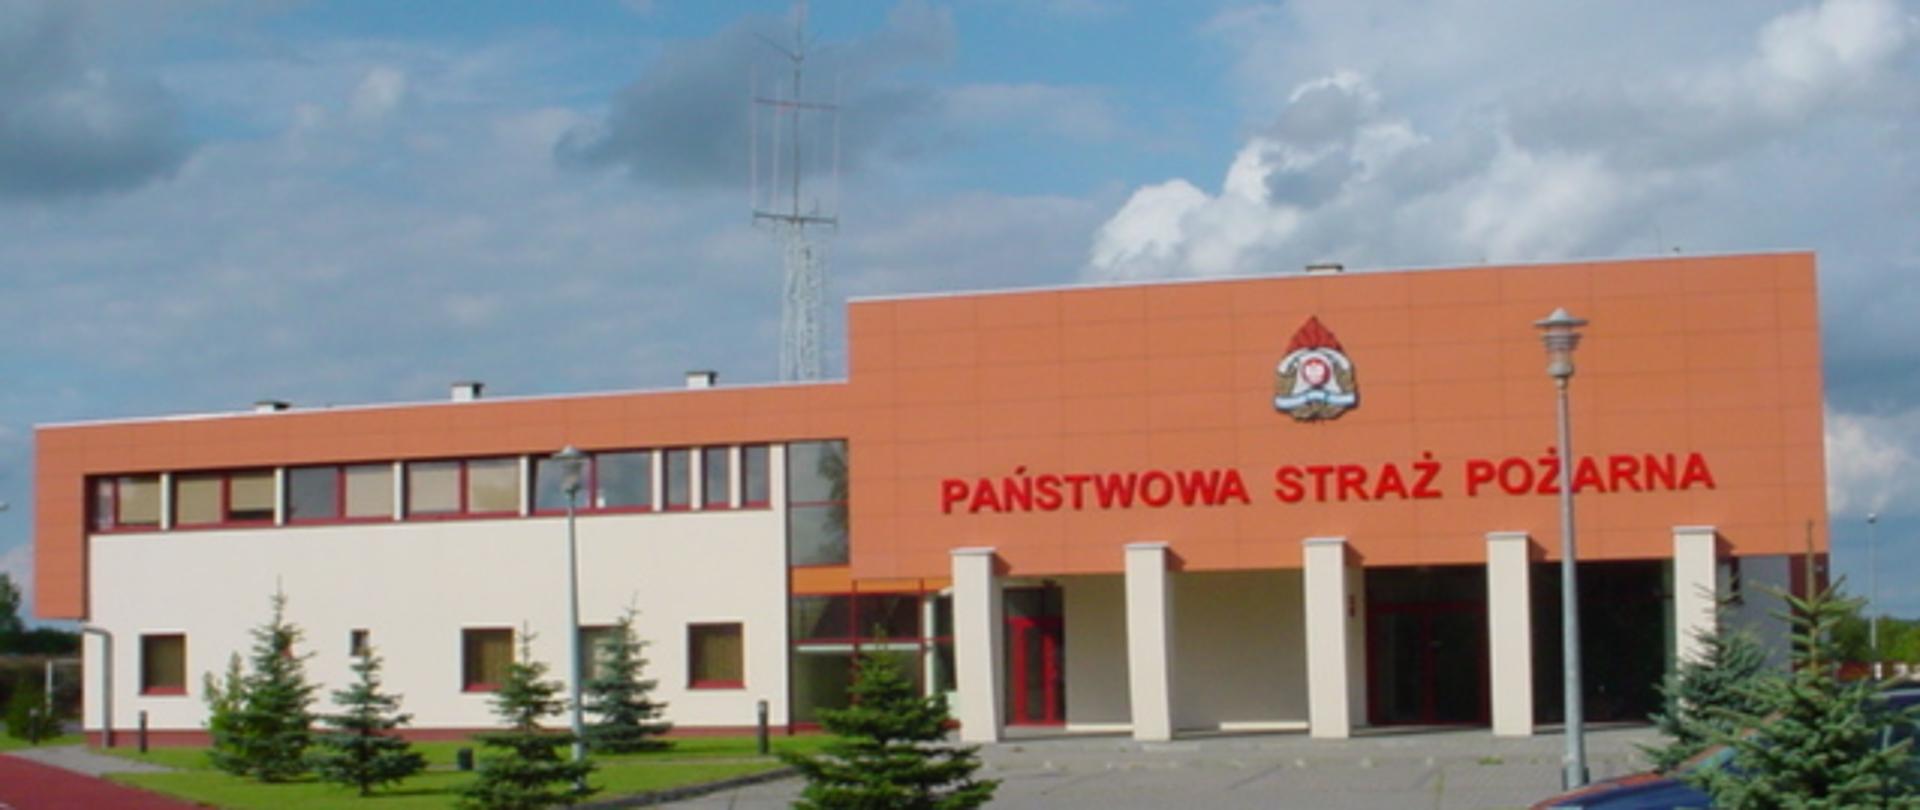 Zdjęcie przedstawia budynek Komendy Powiatowej Państwowej Straży Pożarnej w Międzyrzeczu od frontu.